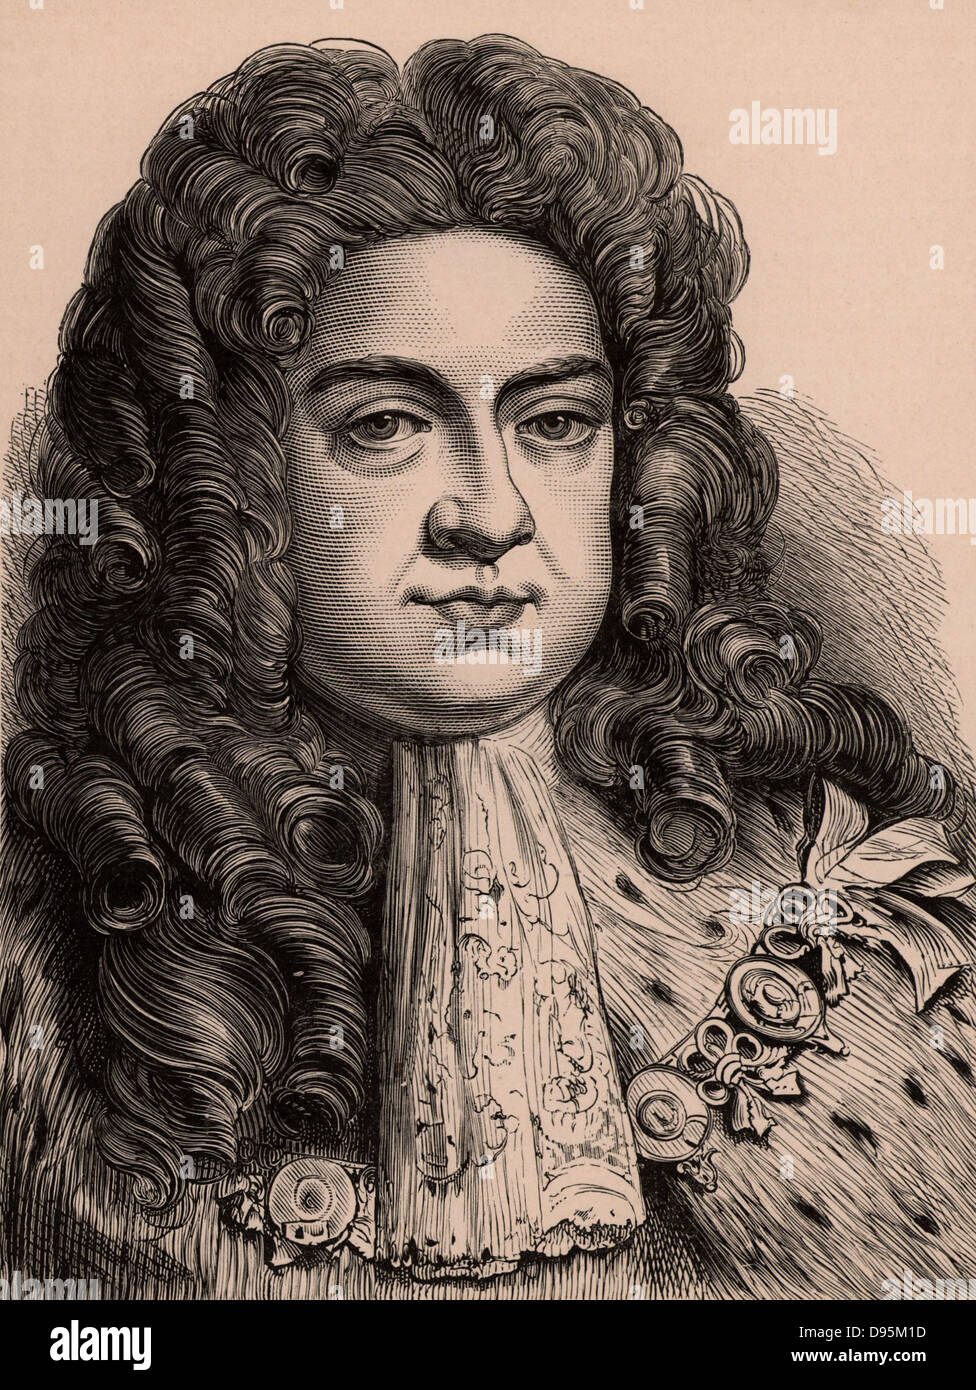 George I (1660-1727) rey de Gran Bretaña e Irlanda a partir de 1714, el príncipe elector de Hannover desde 1798. Primera Hanoverian monarca del Reino Unido. Grabado en madera c1900. Foto de stock